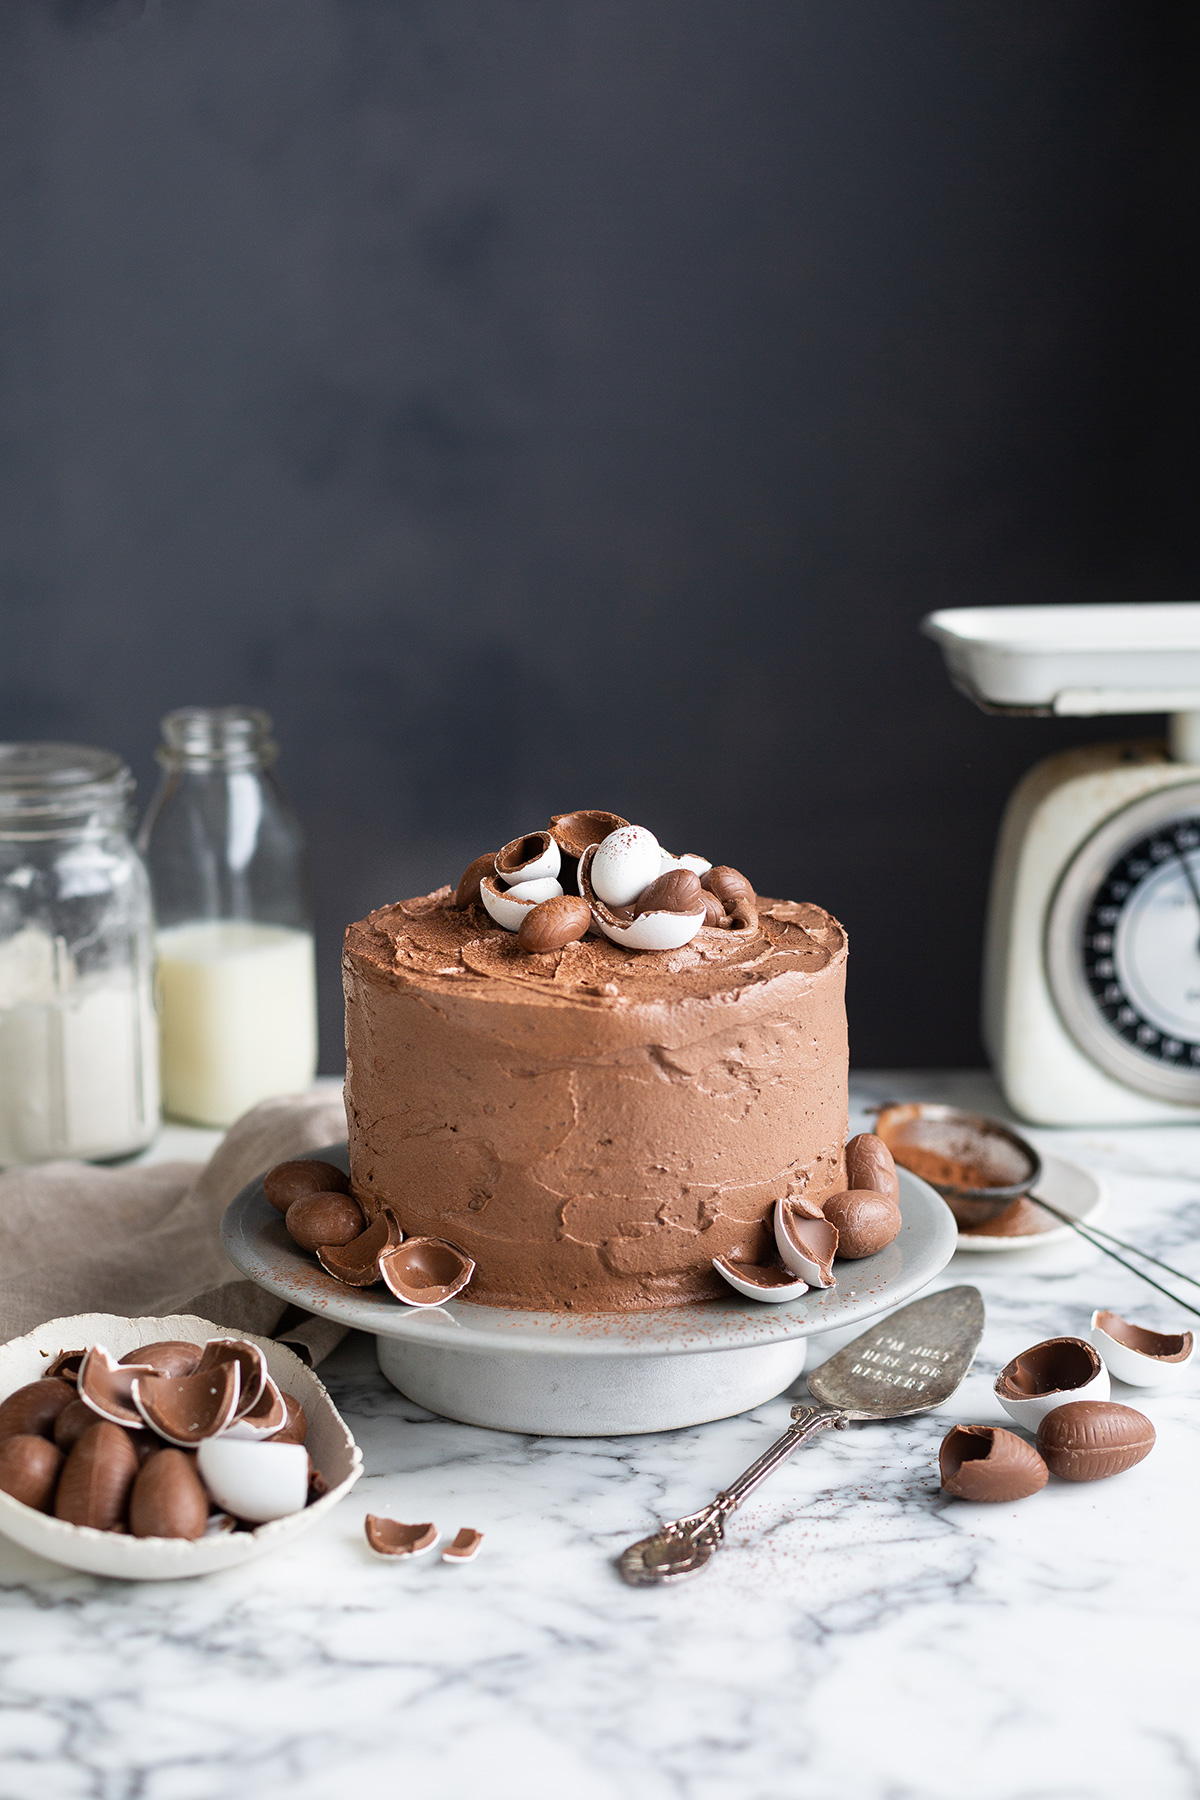 A decadent chocolate cake recipe